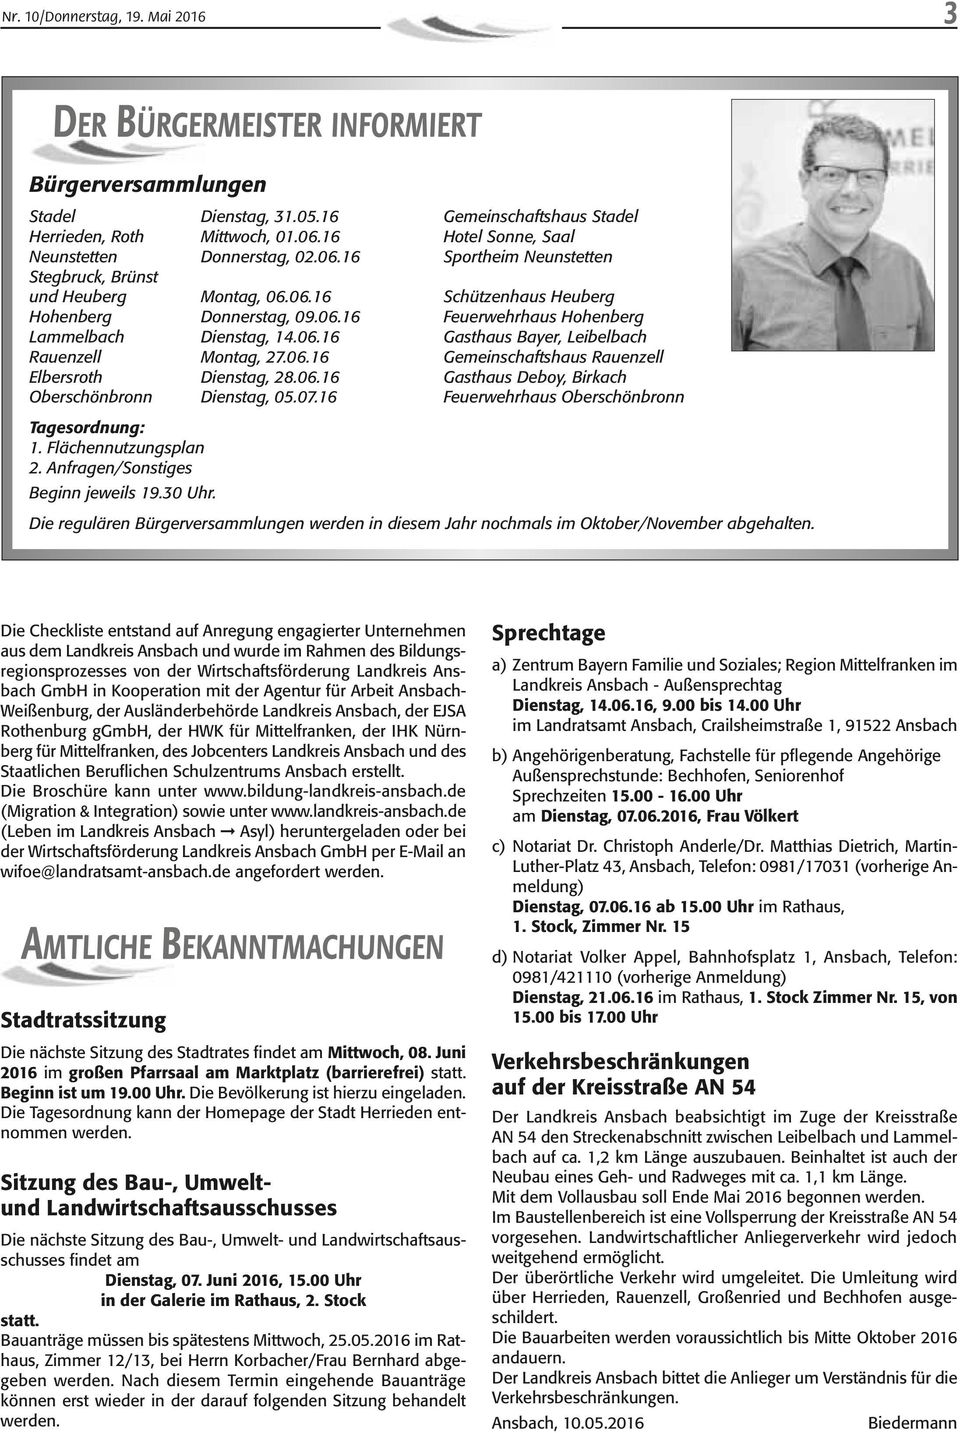 06.16 Gasthaus Bayer, Leibelbach Rauenzell Montag, 27.06.16 Gemeinschaftshaus Rauenzell Elbersroth Dienstag, 28.06.16 Gasthaus Deboy, Birkach Oberschönbronn Dienstag, 05.07.